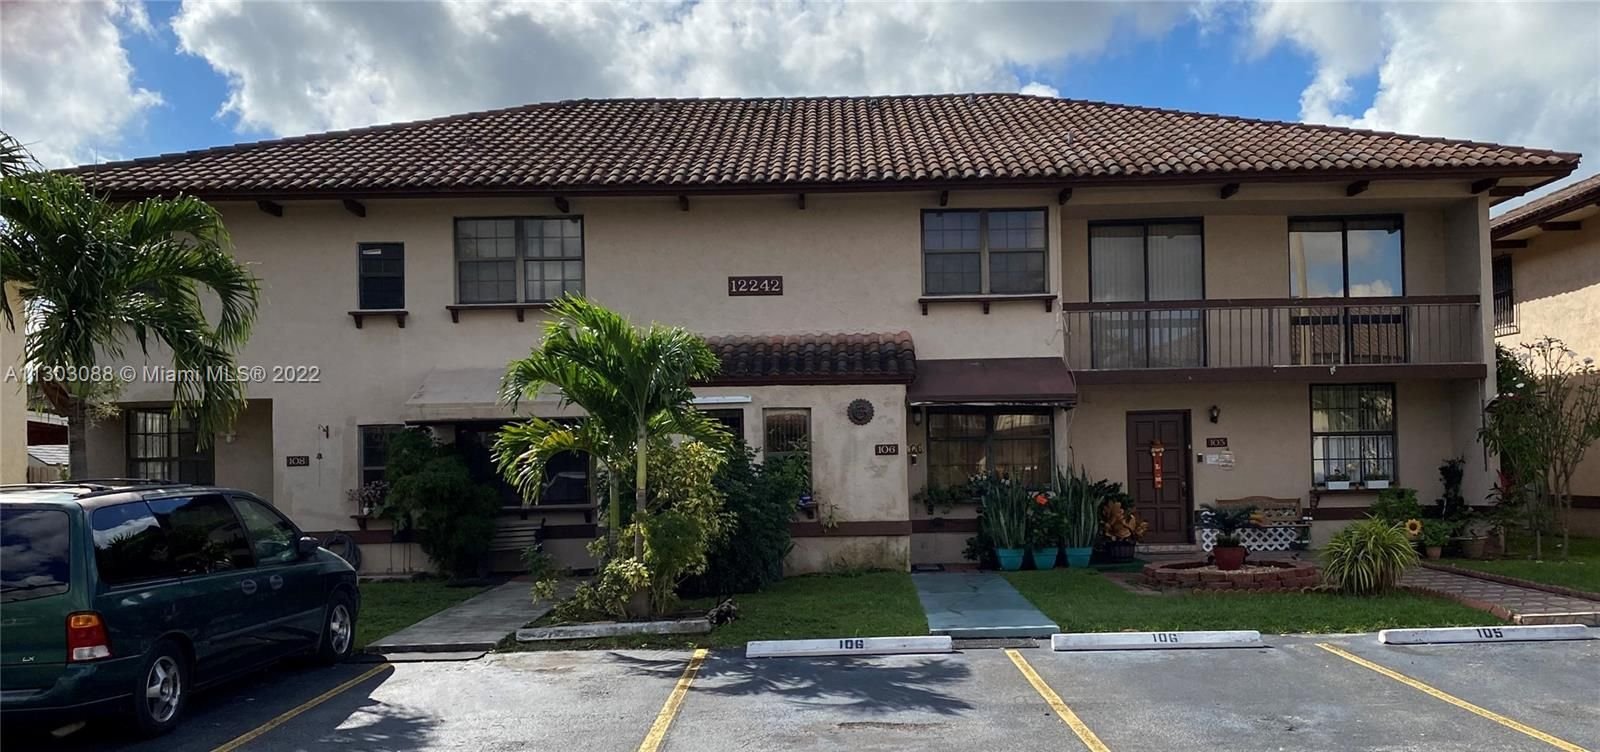 Real estate property located at 12242 16th Ter L-106, Miami-Dade County, Miami, FL